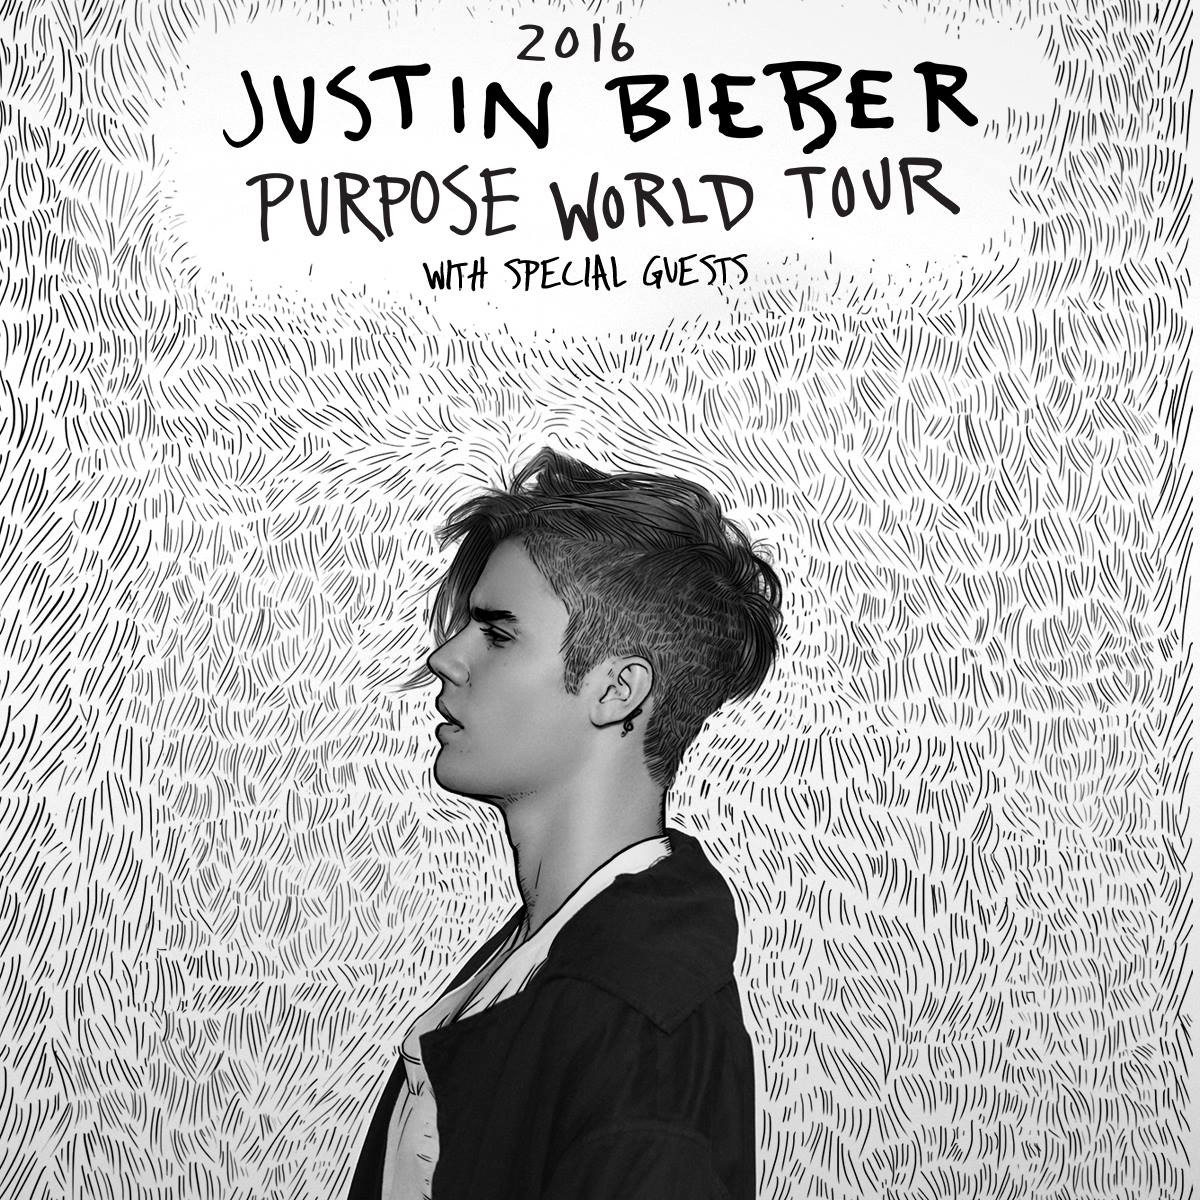 Info viabilità zona Unipol Arena concerto Justin Bieber 19-20 novembre 2016